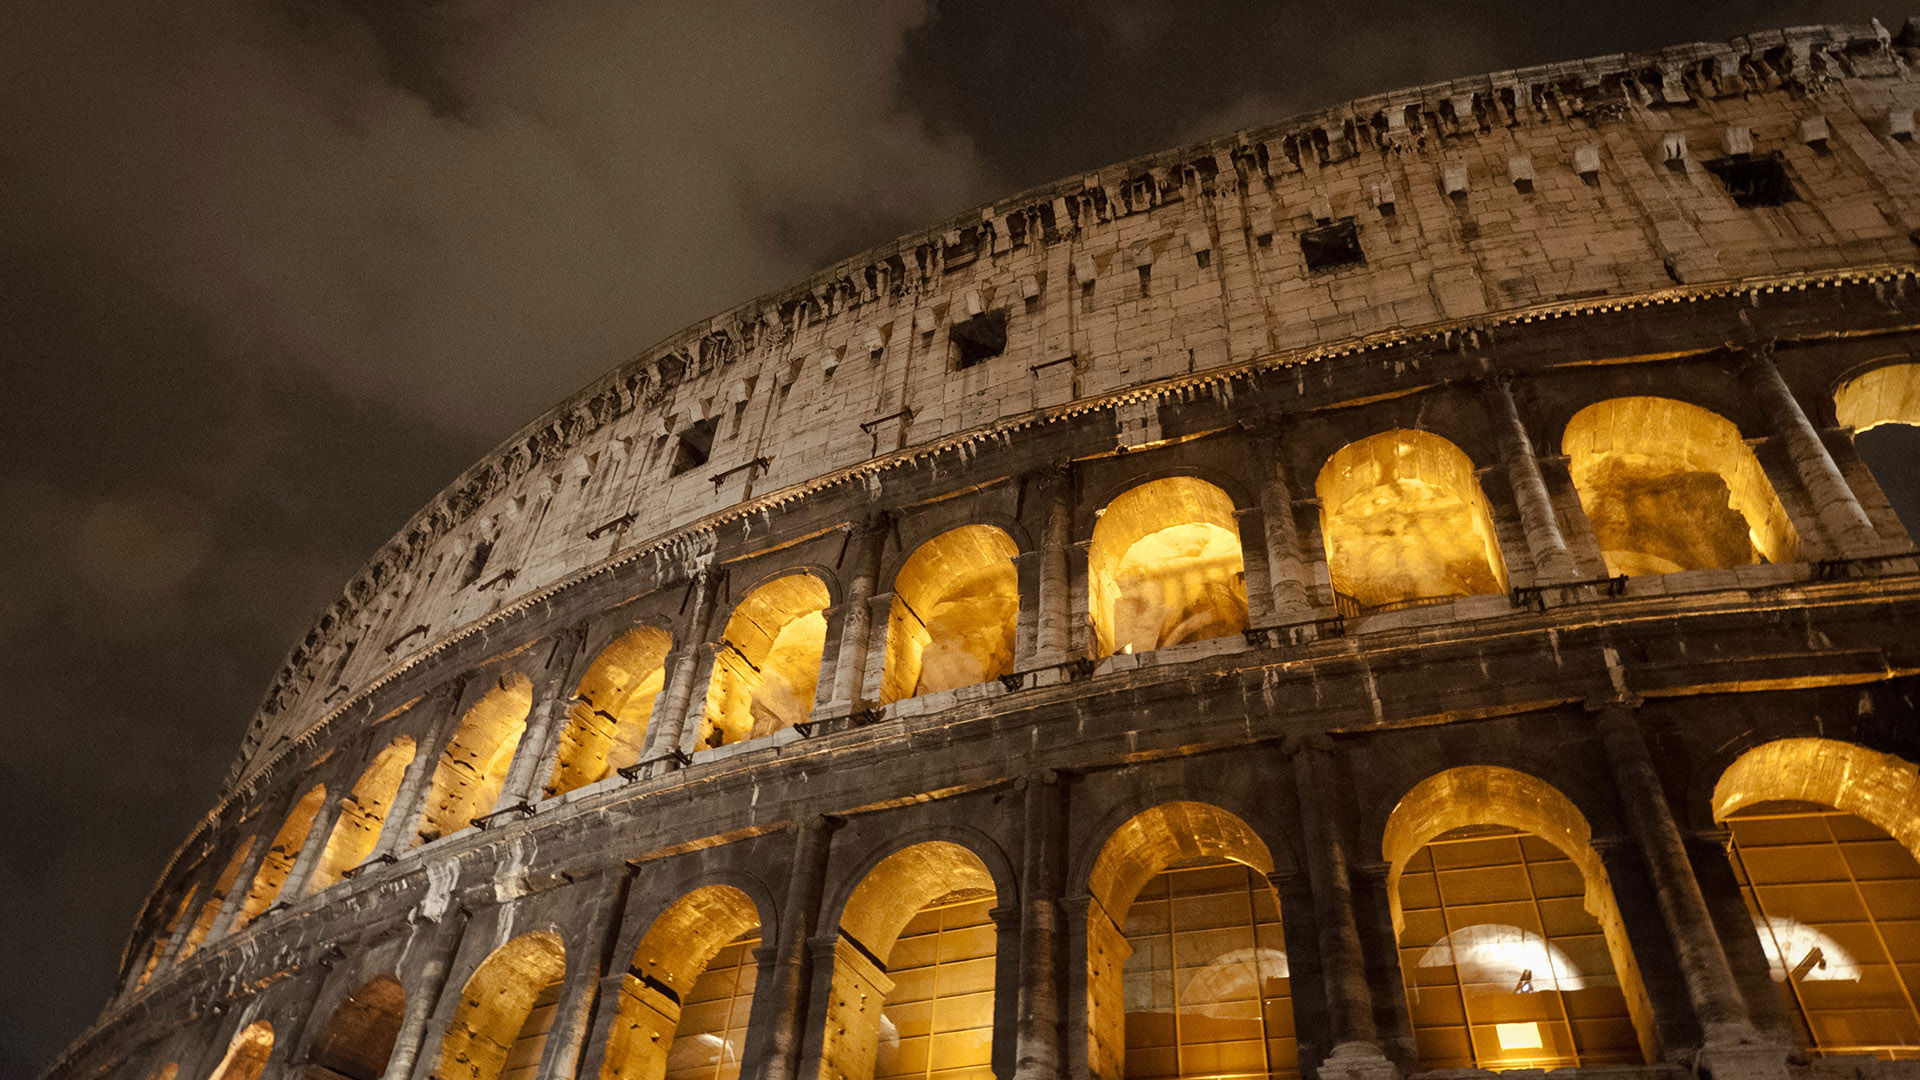 FH55 Hotels - Visitare il Colosseo: cosa vedere, biglietti e orari 1